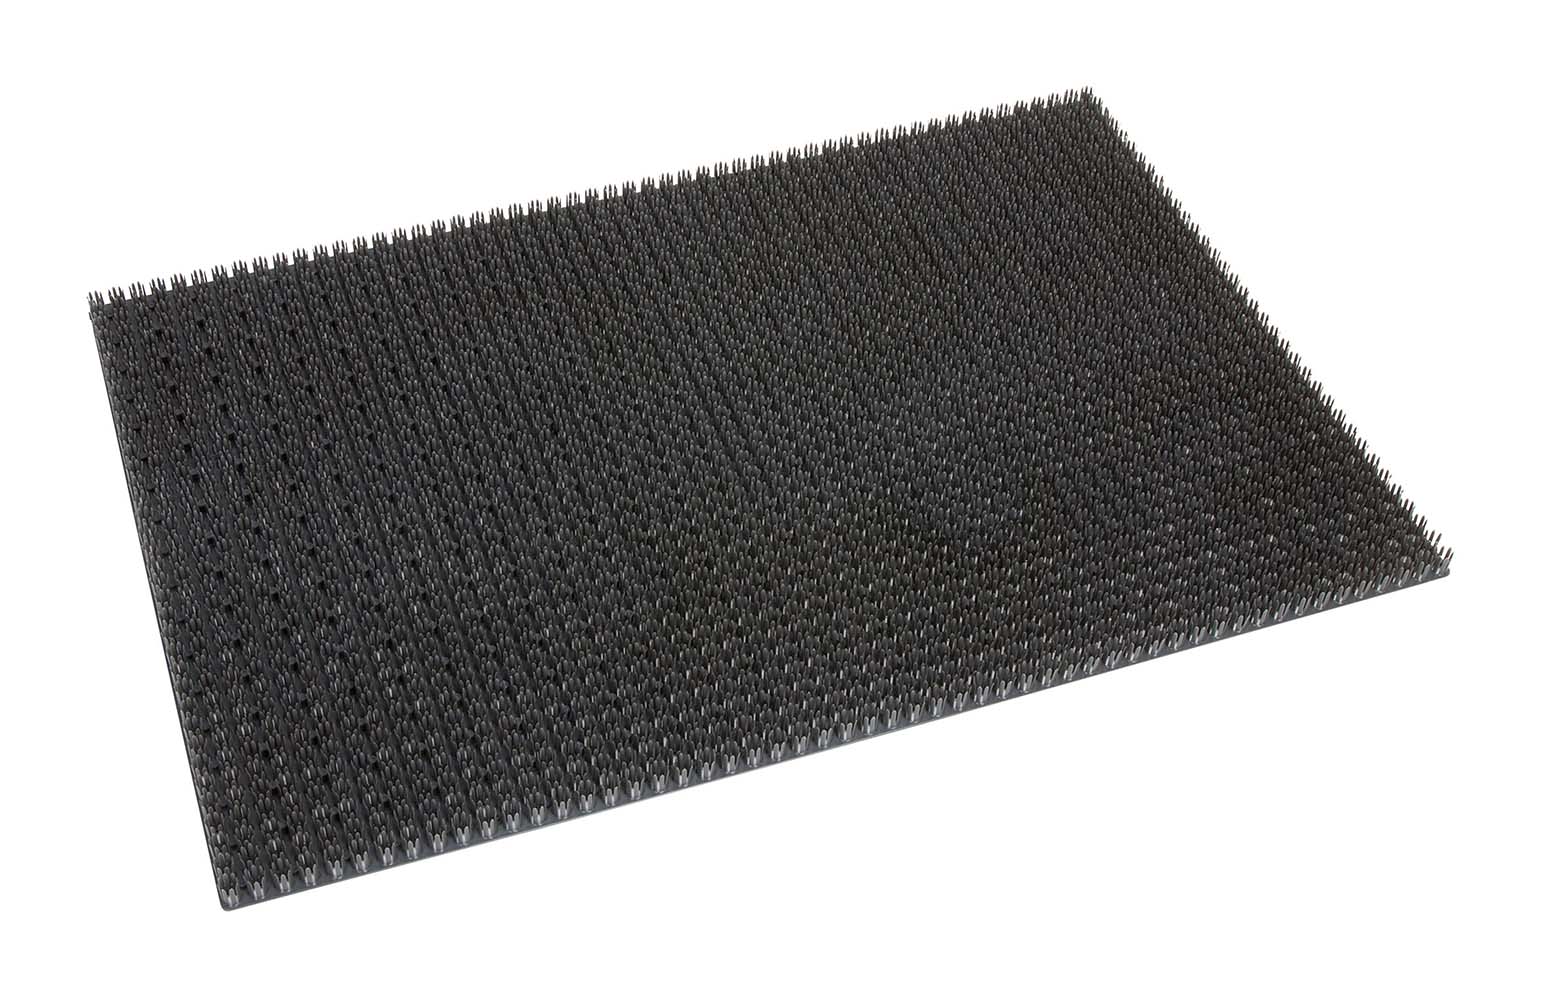 5388024 A solid synthetic fibre doormat.